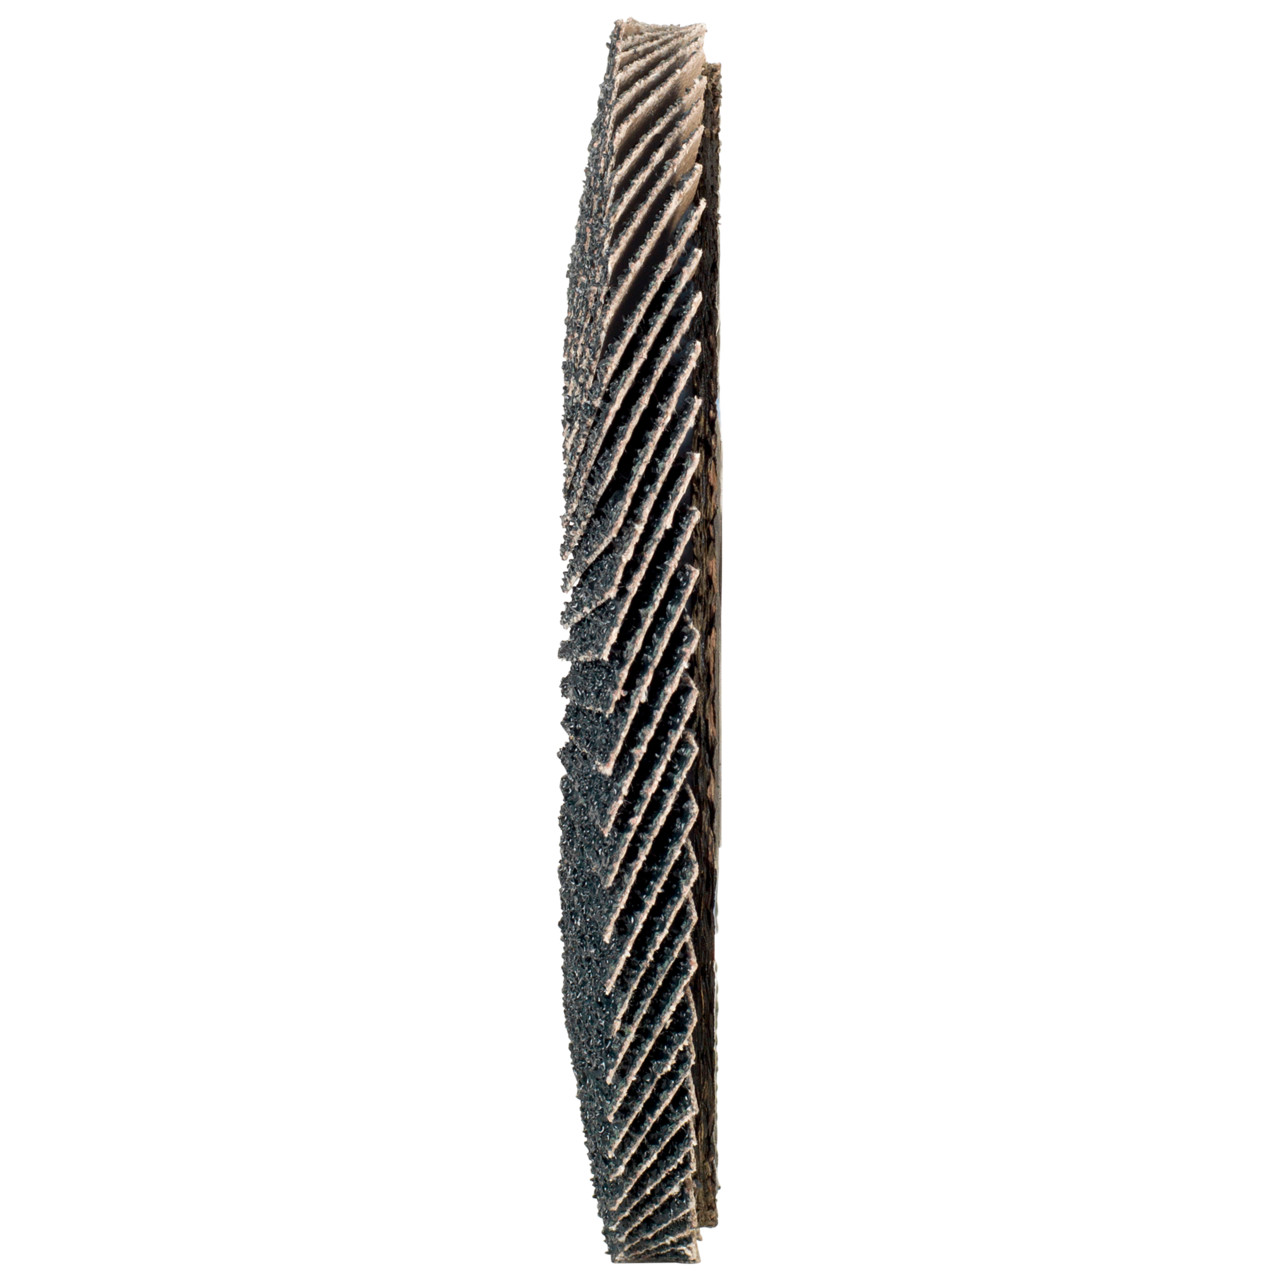 Rondella dentata Tyrolit DxH 125x22.2 2in1 per acciaio e acciaio inox, P60, forma: 28A - versione diritto (versione con corpo portante in fibra di vetro), Art. 668693